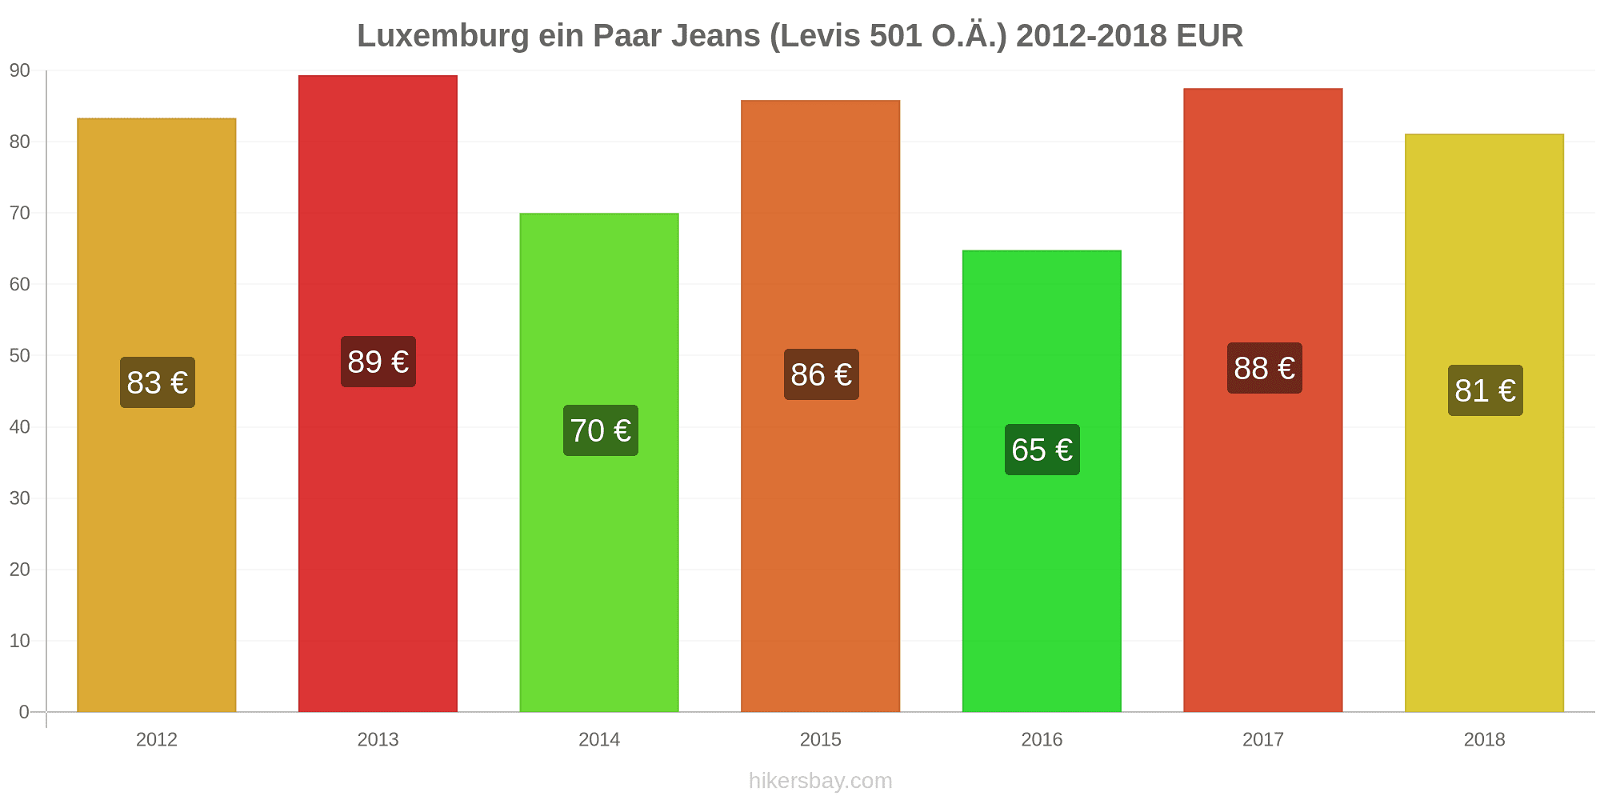 Luxemburg Preisänderungen 1 Paar Jeans (Levis 501 oder ähnliche) hikersbay.com